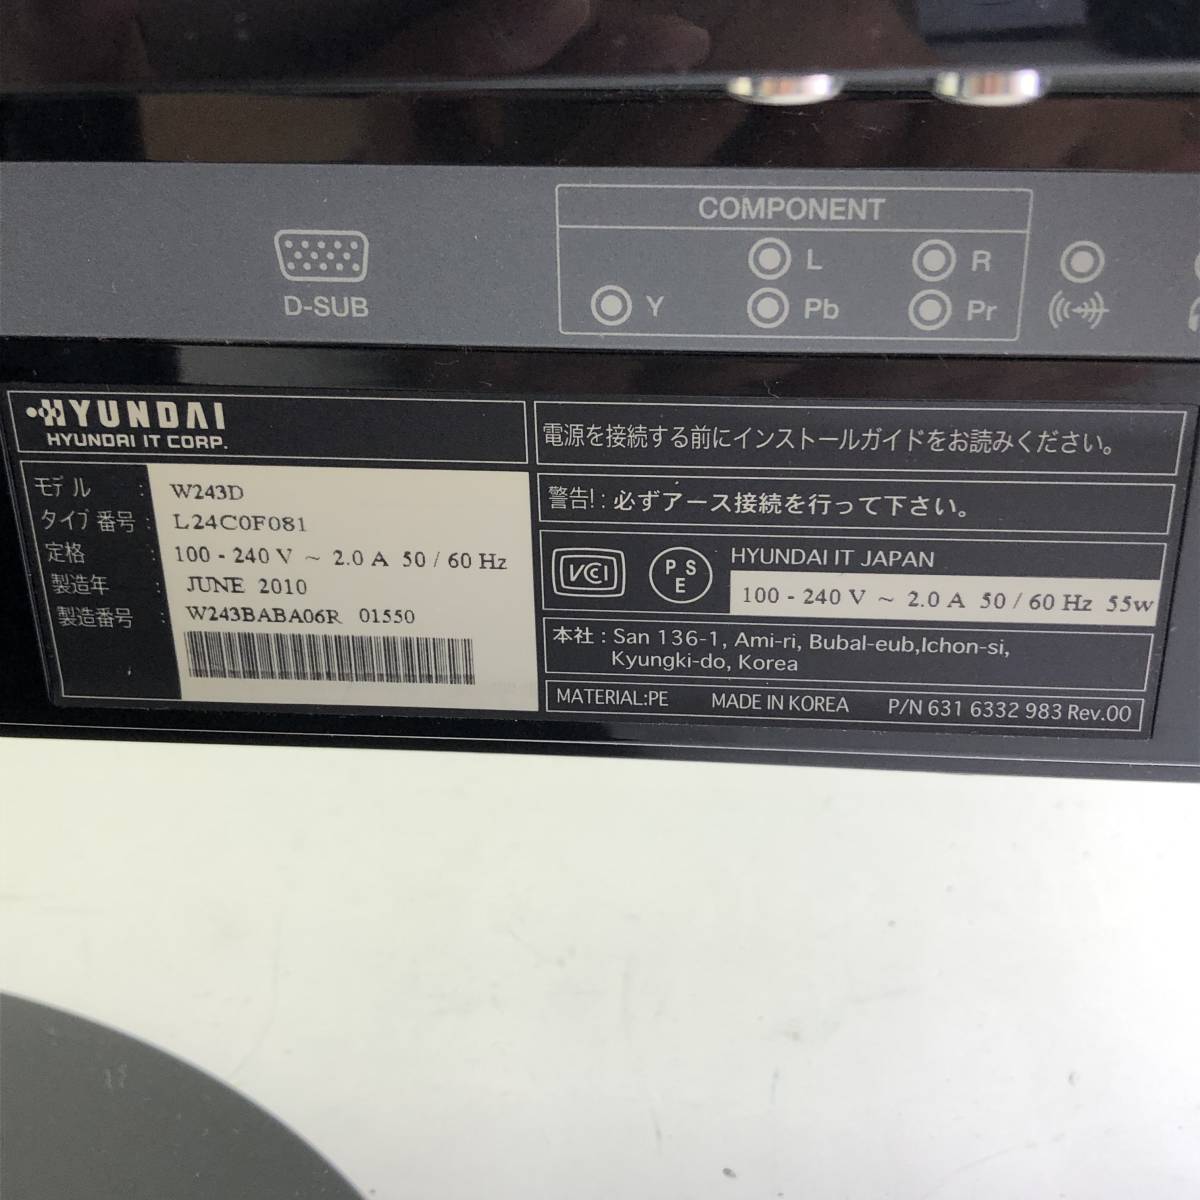 【通電確認済】HYUNDAI/ヒュンダイ 24インチ 液晶ワイドモニター ディスプレイ【W243D】_画像9